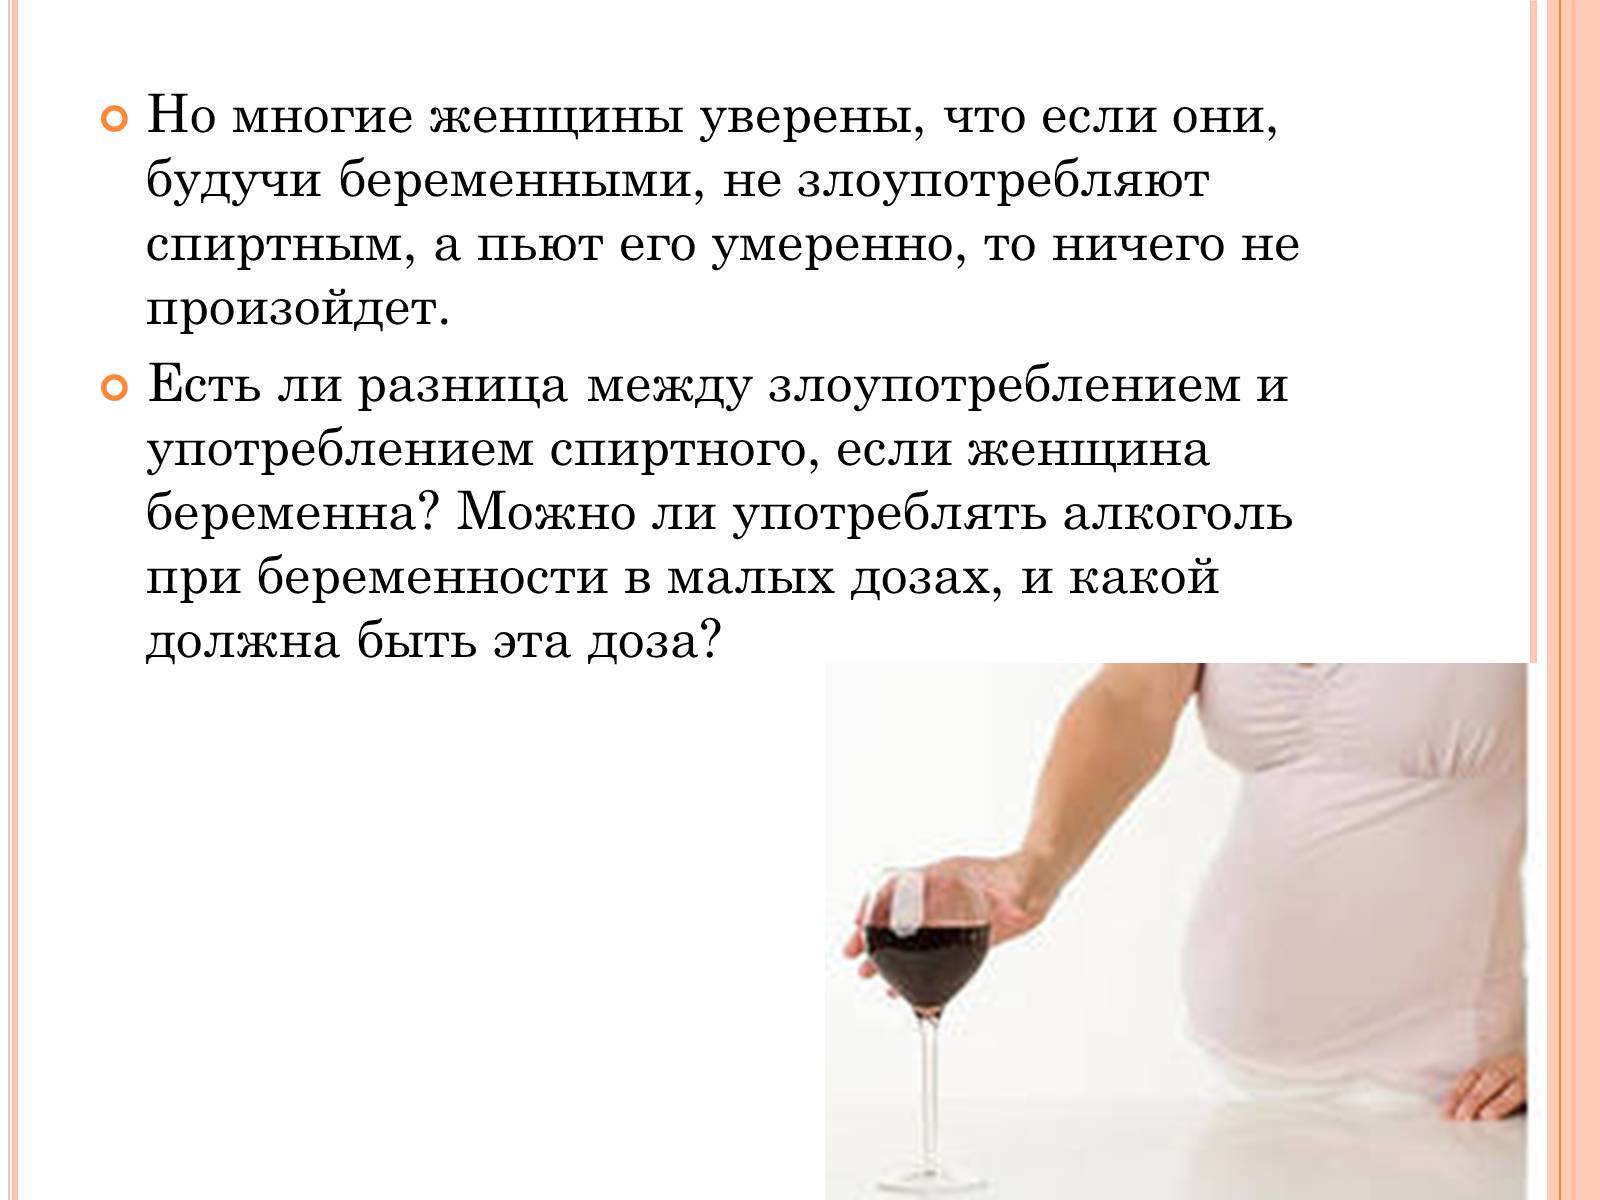 Алкоголь при беременности — почему беременным нельзя пить спиртное